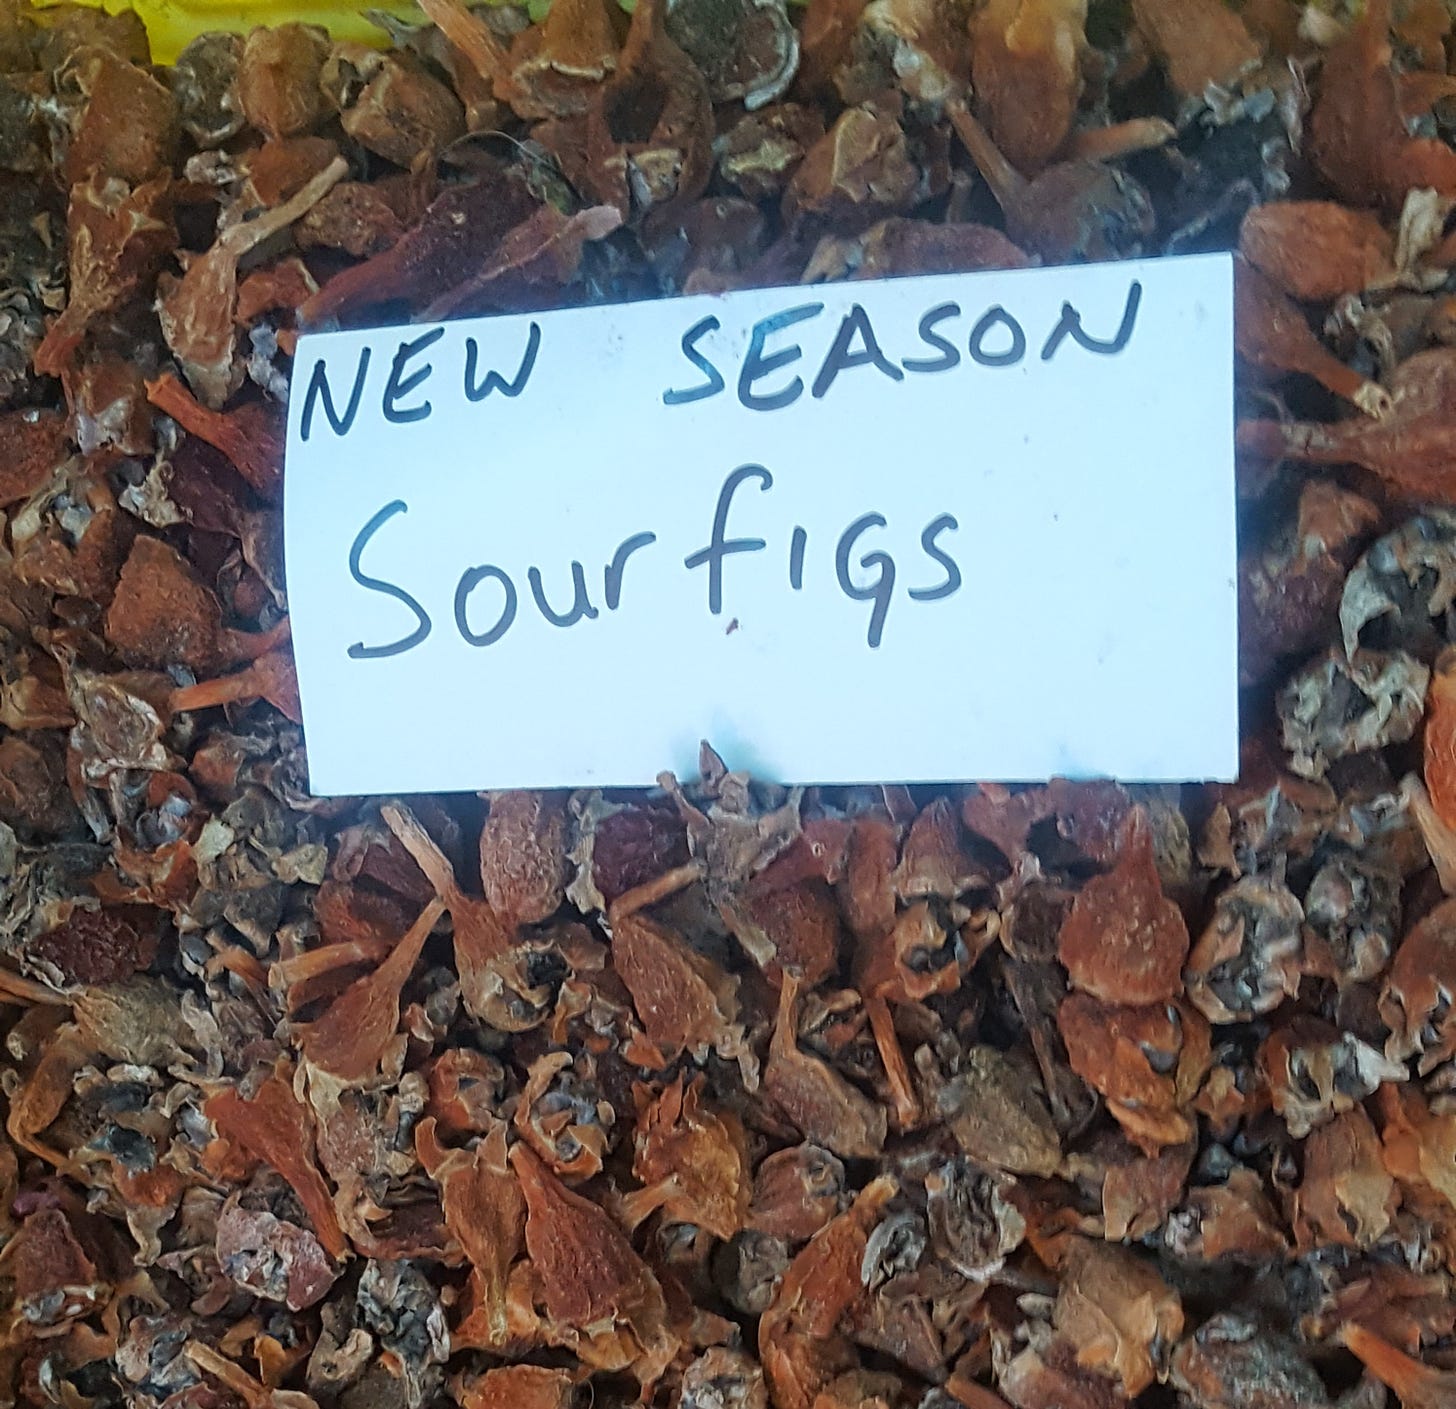 sour figs, market Cape Town